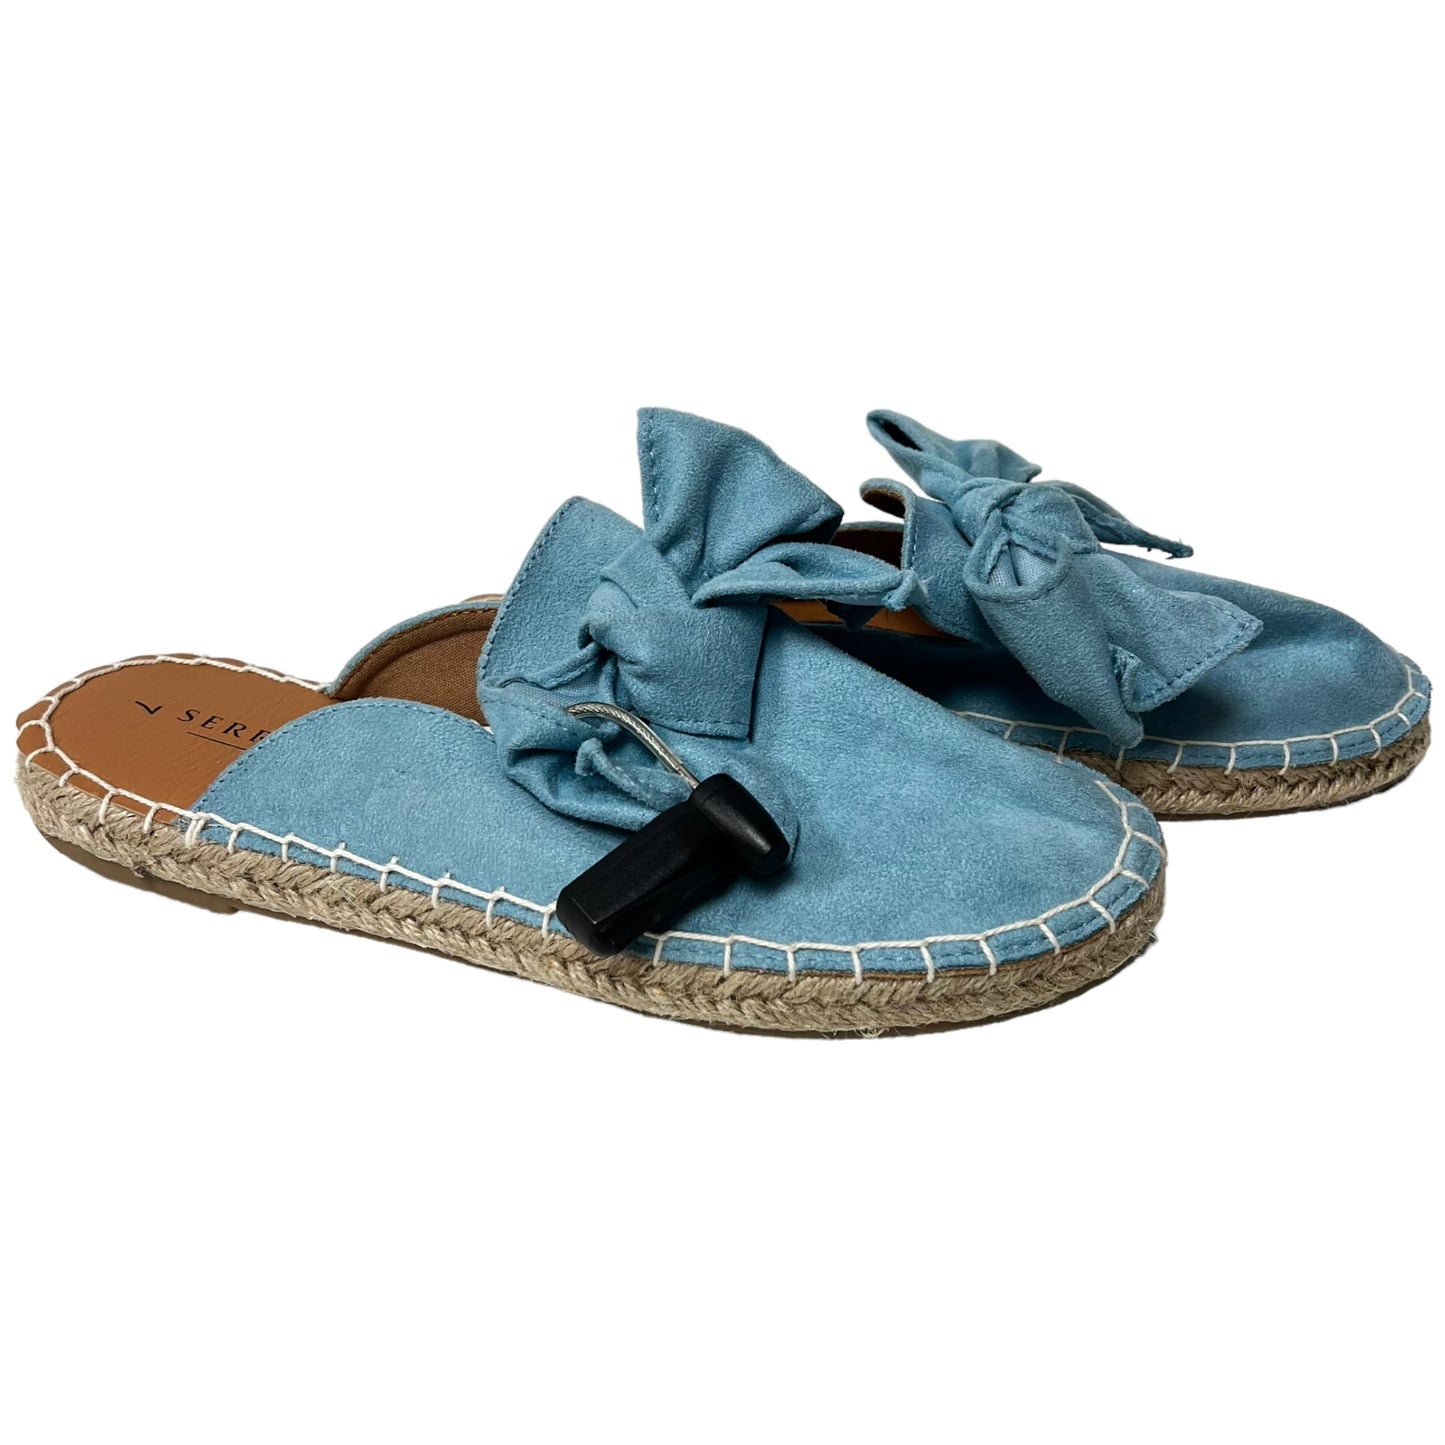 Shoes Flats Mule & Slide By Serra  Size: 7